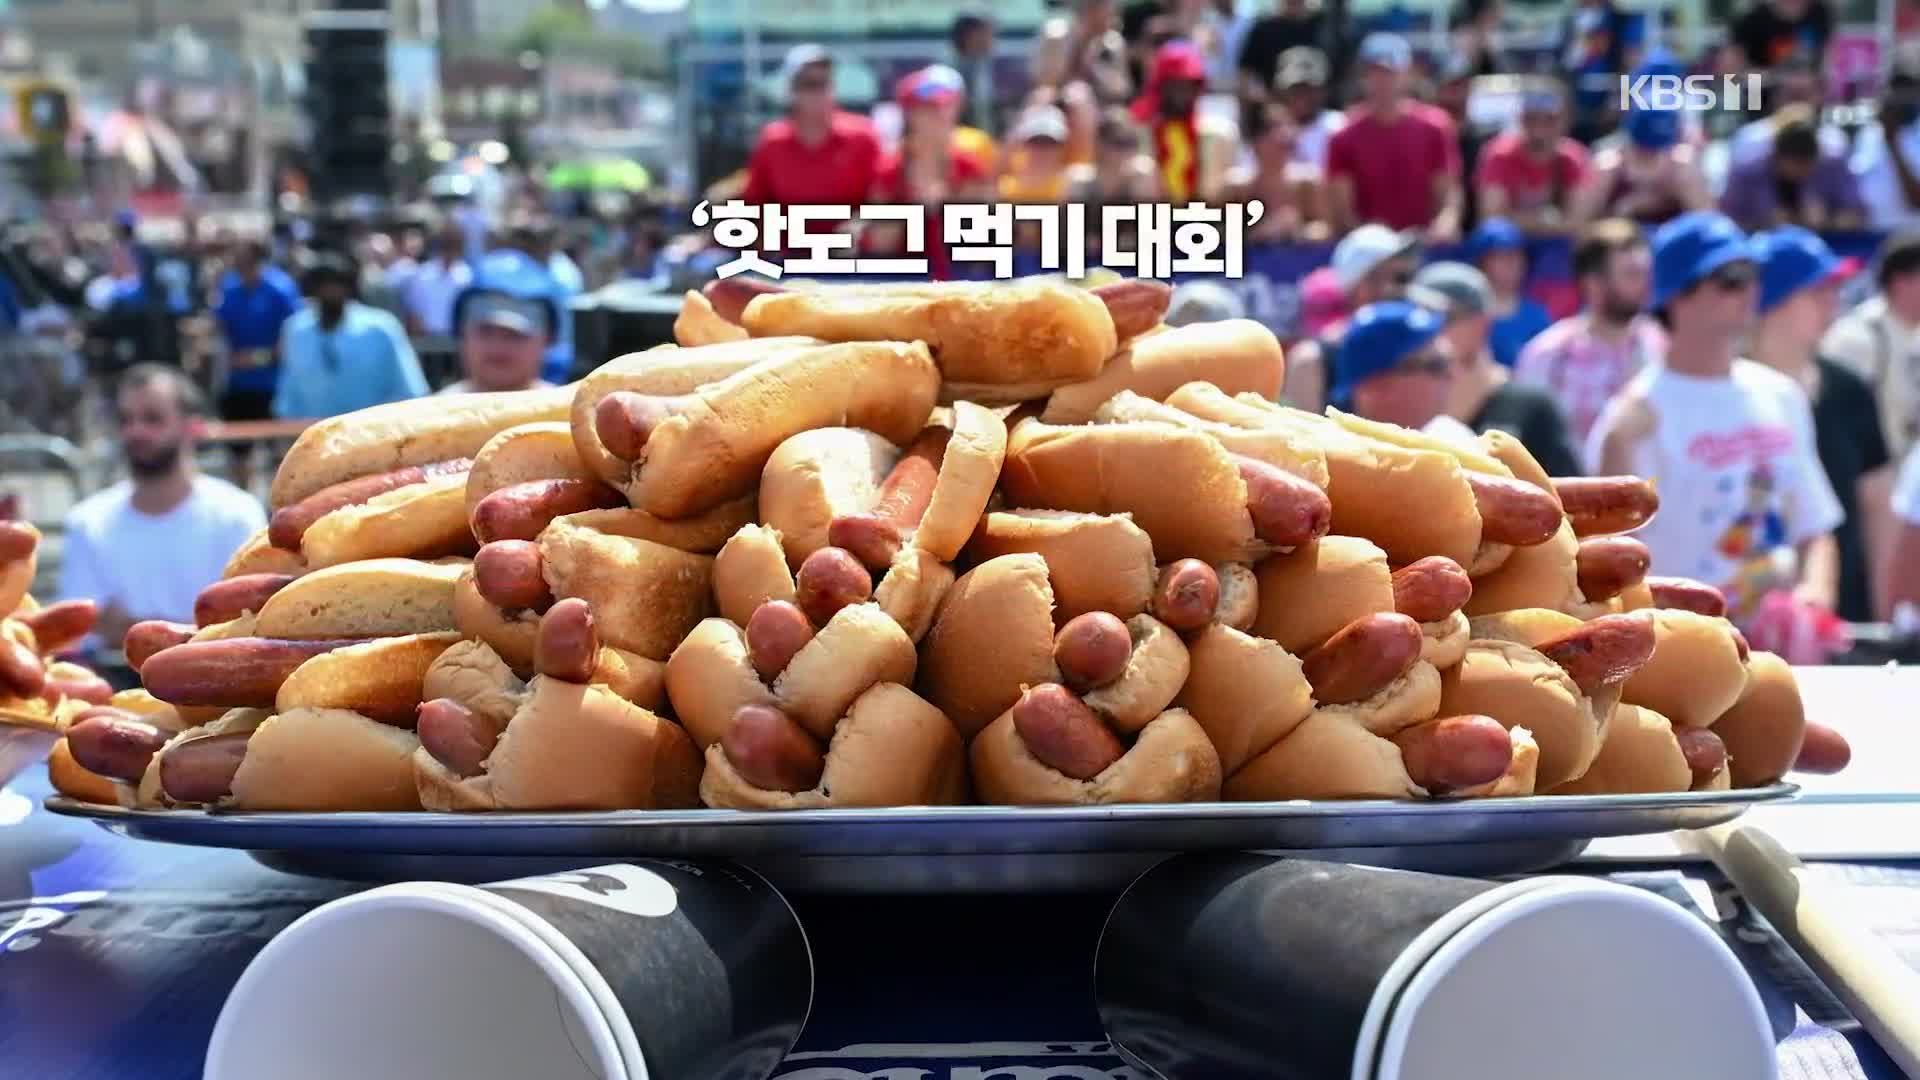 [오늘의 영상] 핫도그 10분에 몇 개 먹기 가능? 62개!